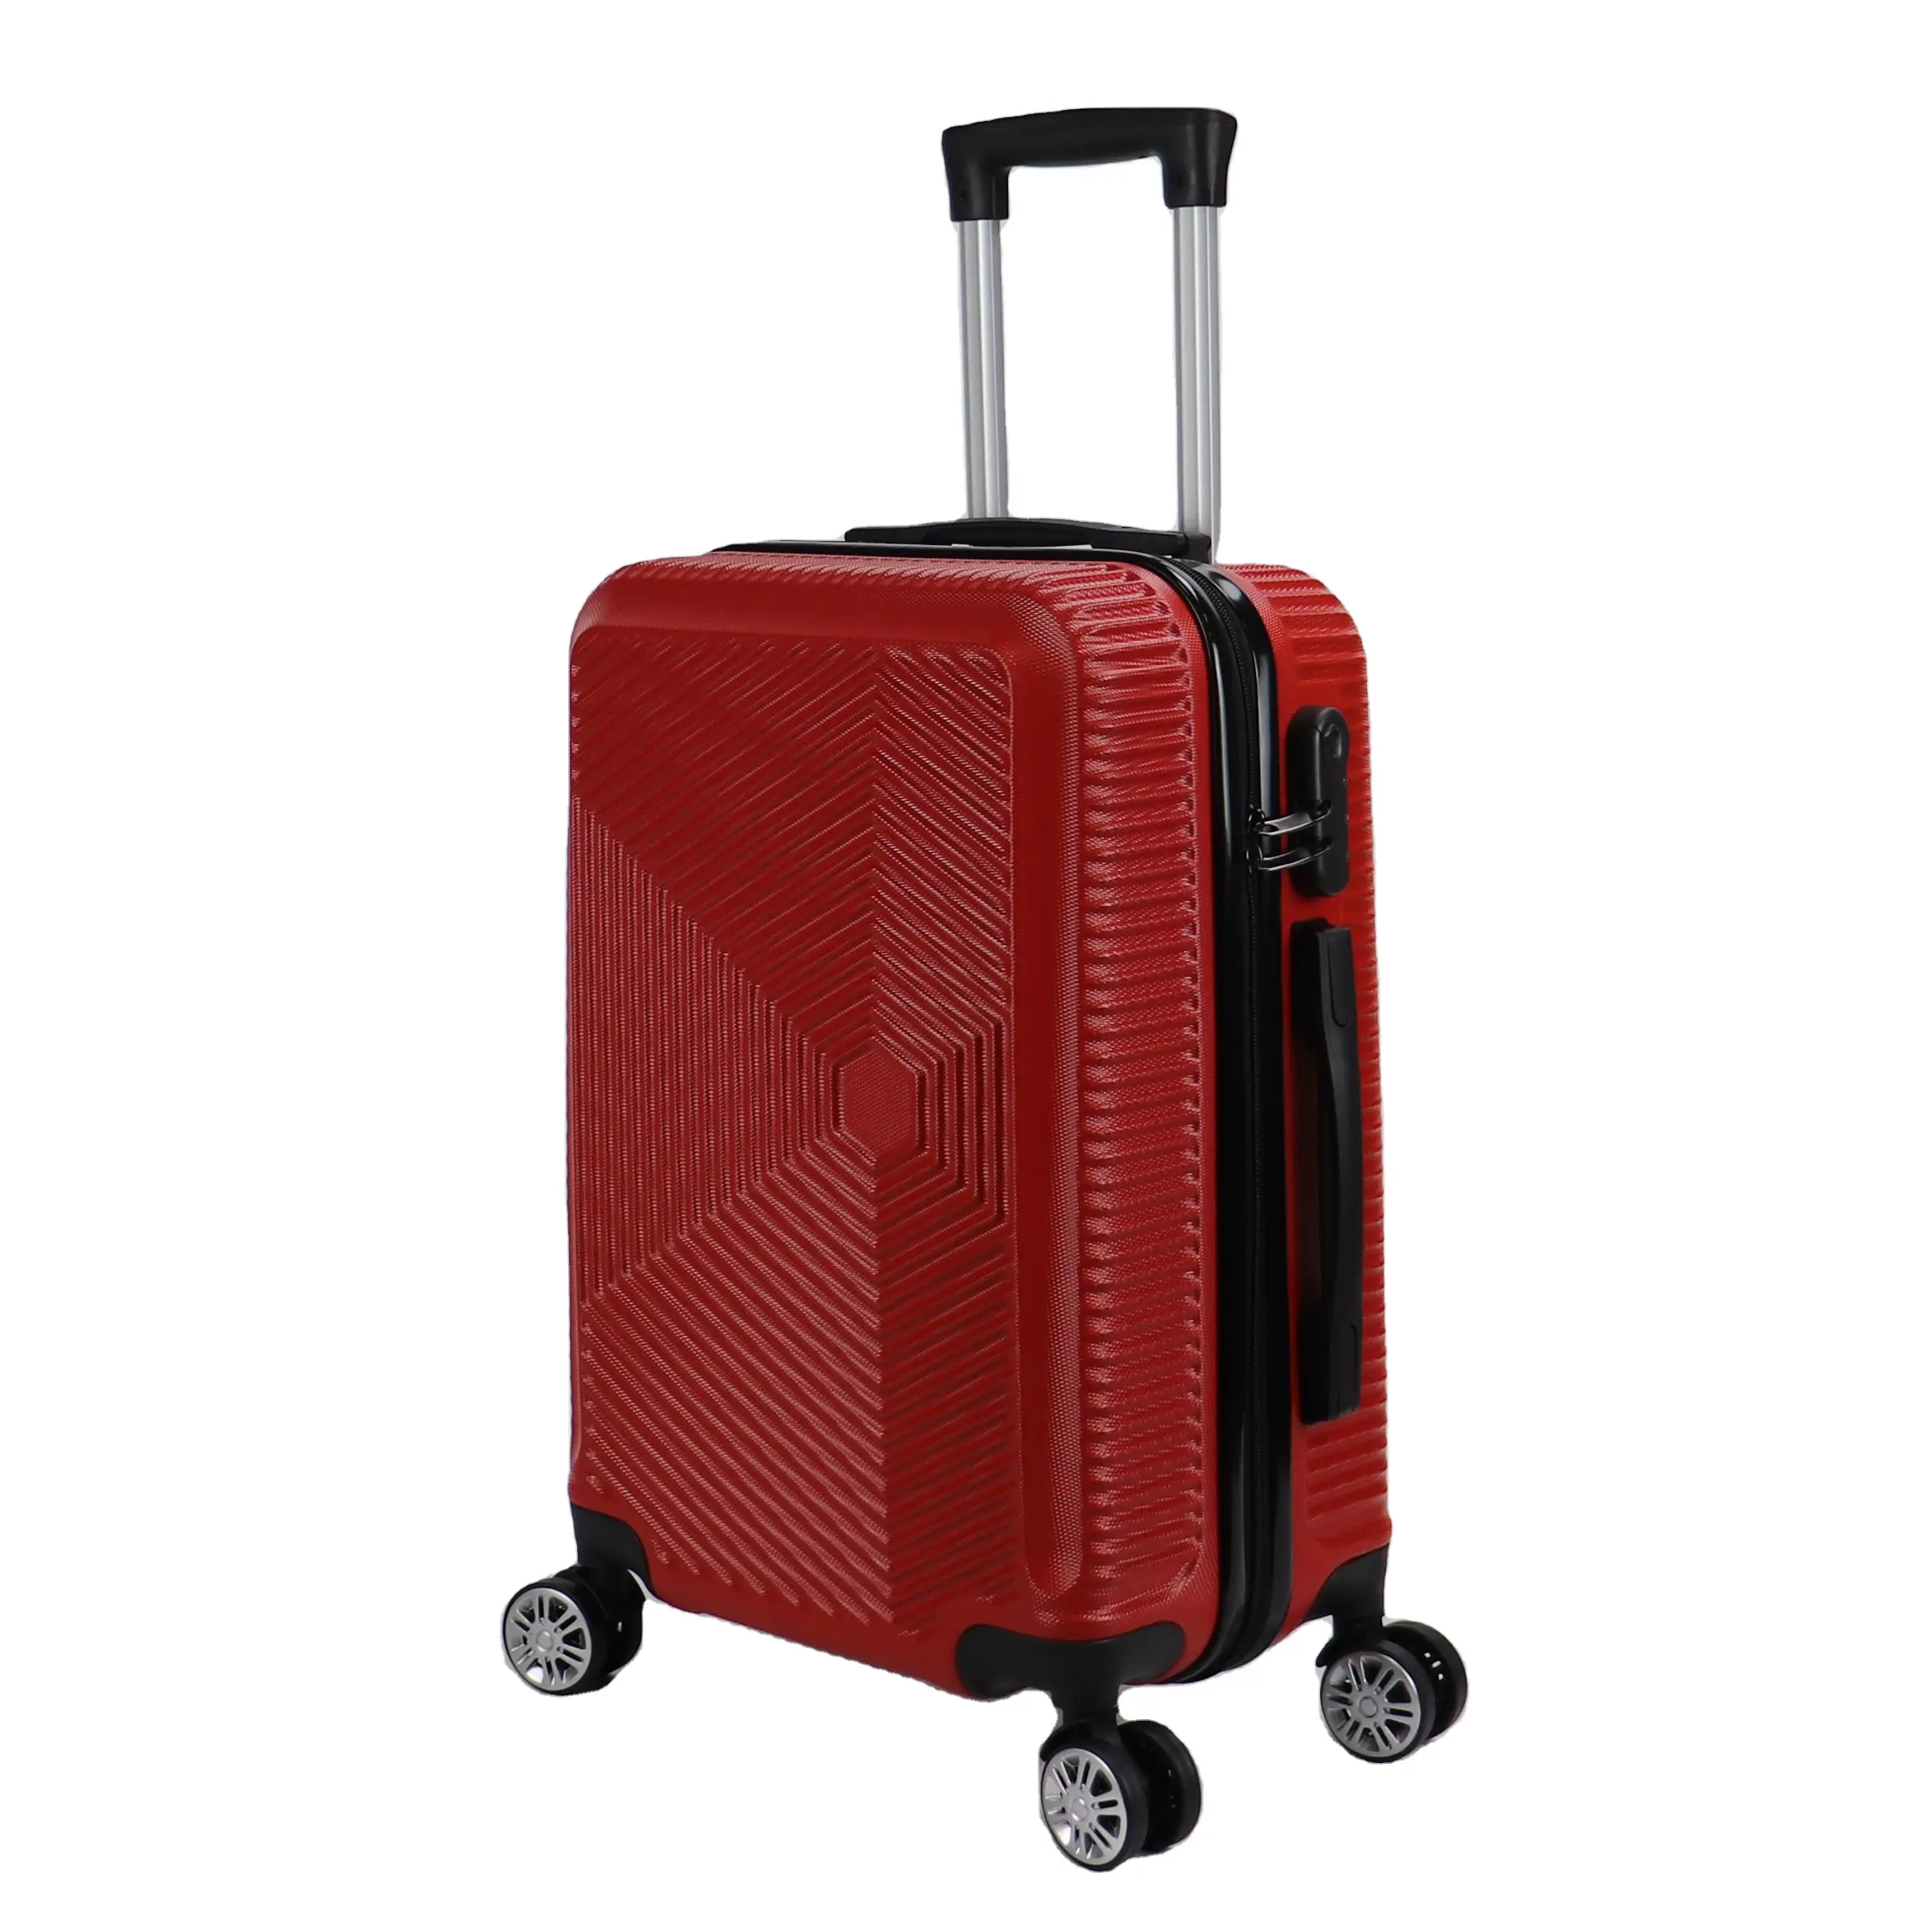 सर्वोत्तम चेक-इन साइज़ ट्रॉली सूटकेस, पहियों के साथ कैरी-ऑन हार्डसाइड स्पिनर लगेज सेट, विस्तार योग्य एबीएस लगेज सूटकेस बैग